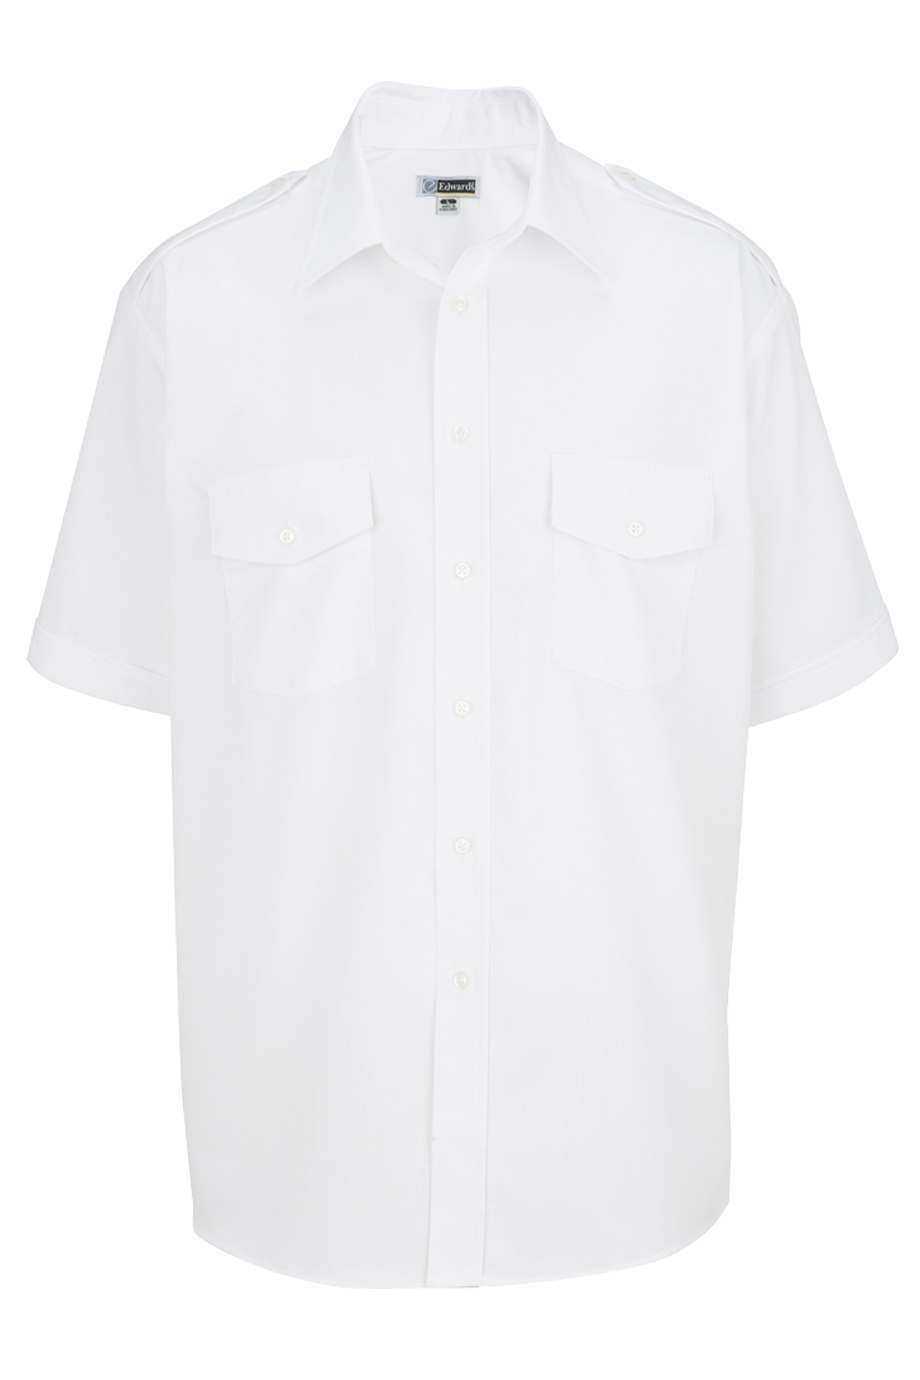 Edwards Mens Short Sleeve Navigator Shirt 